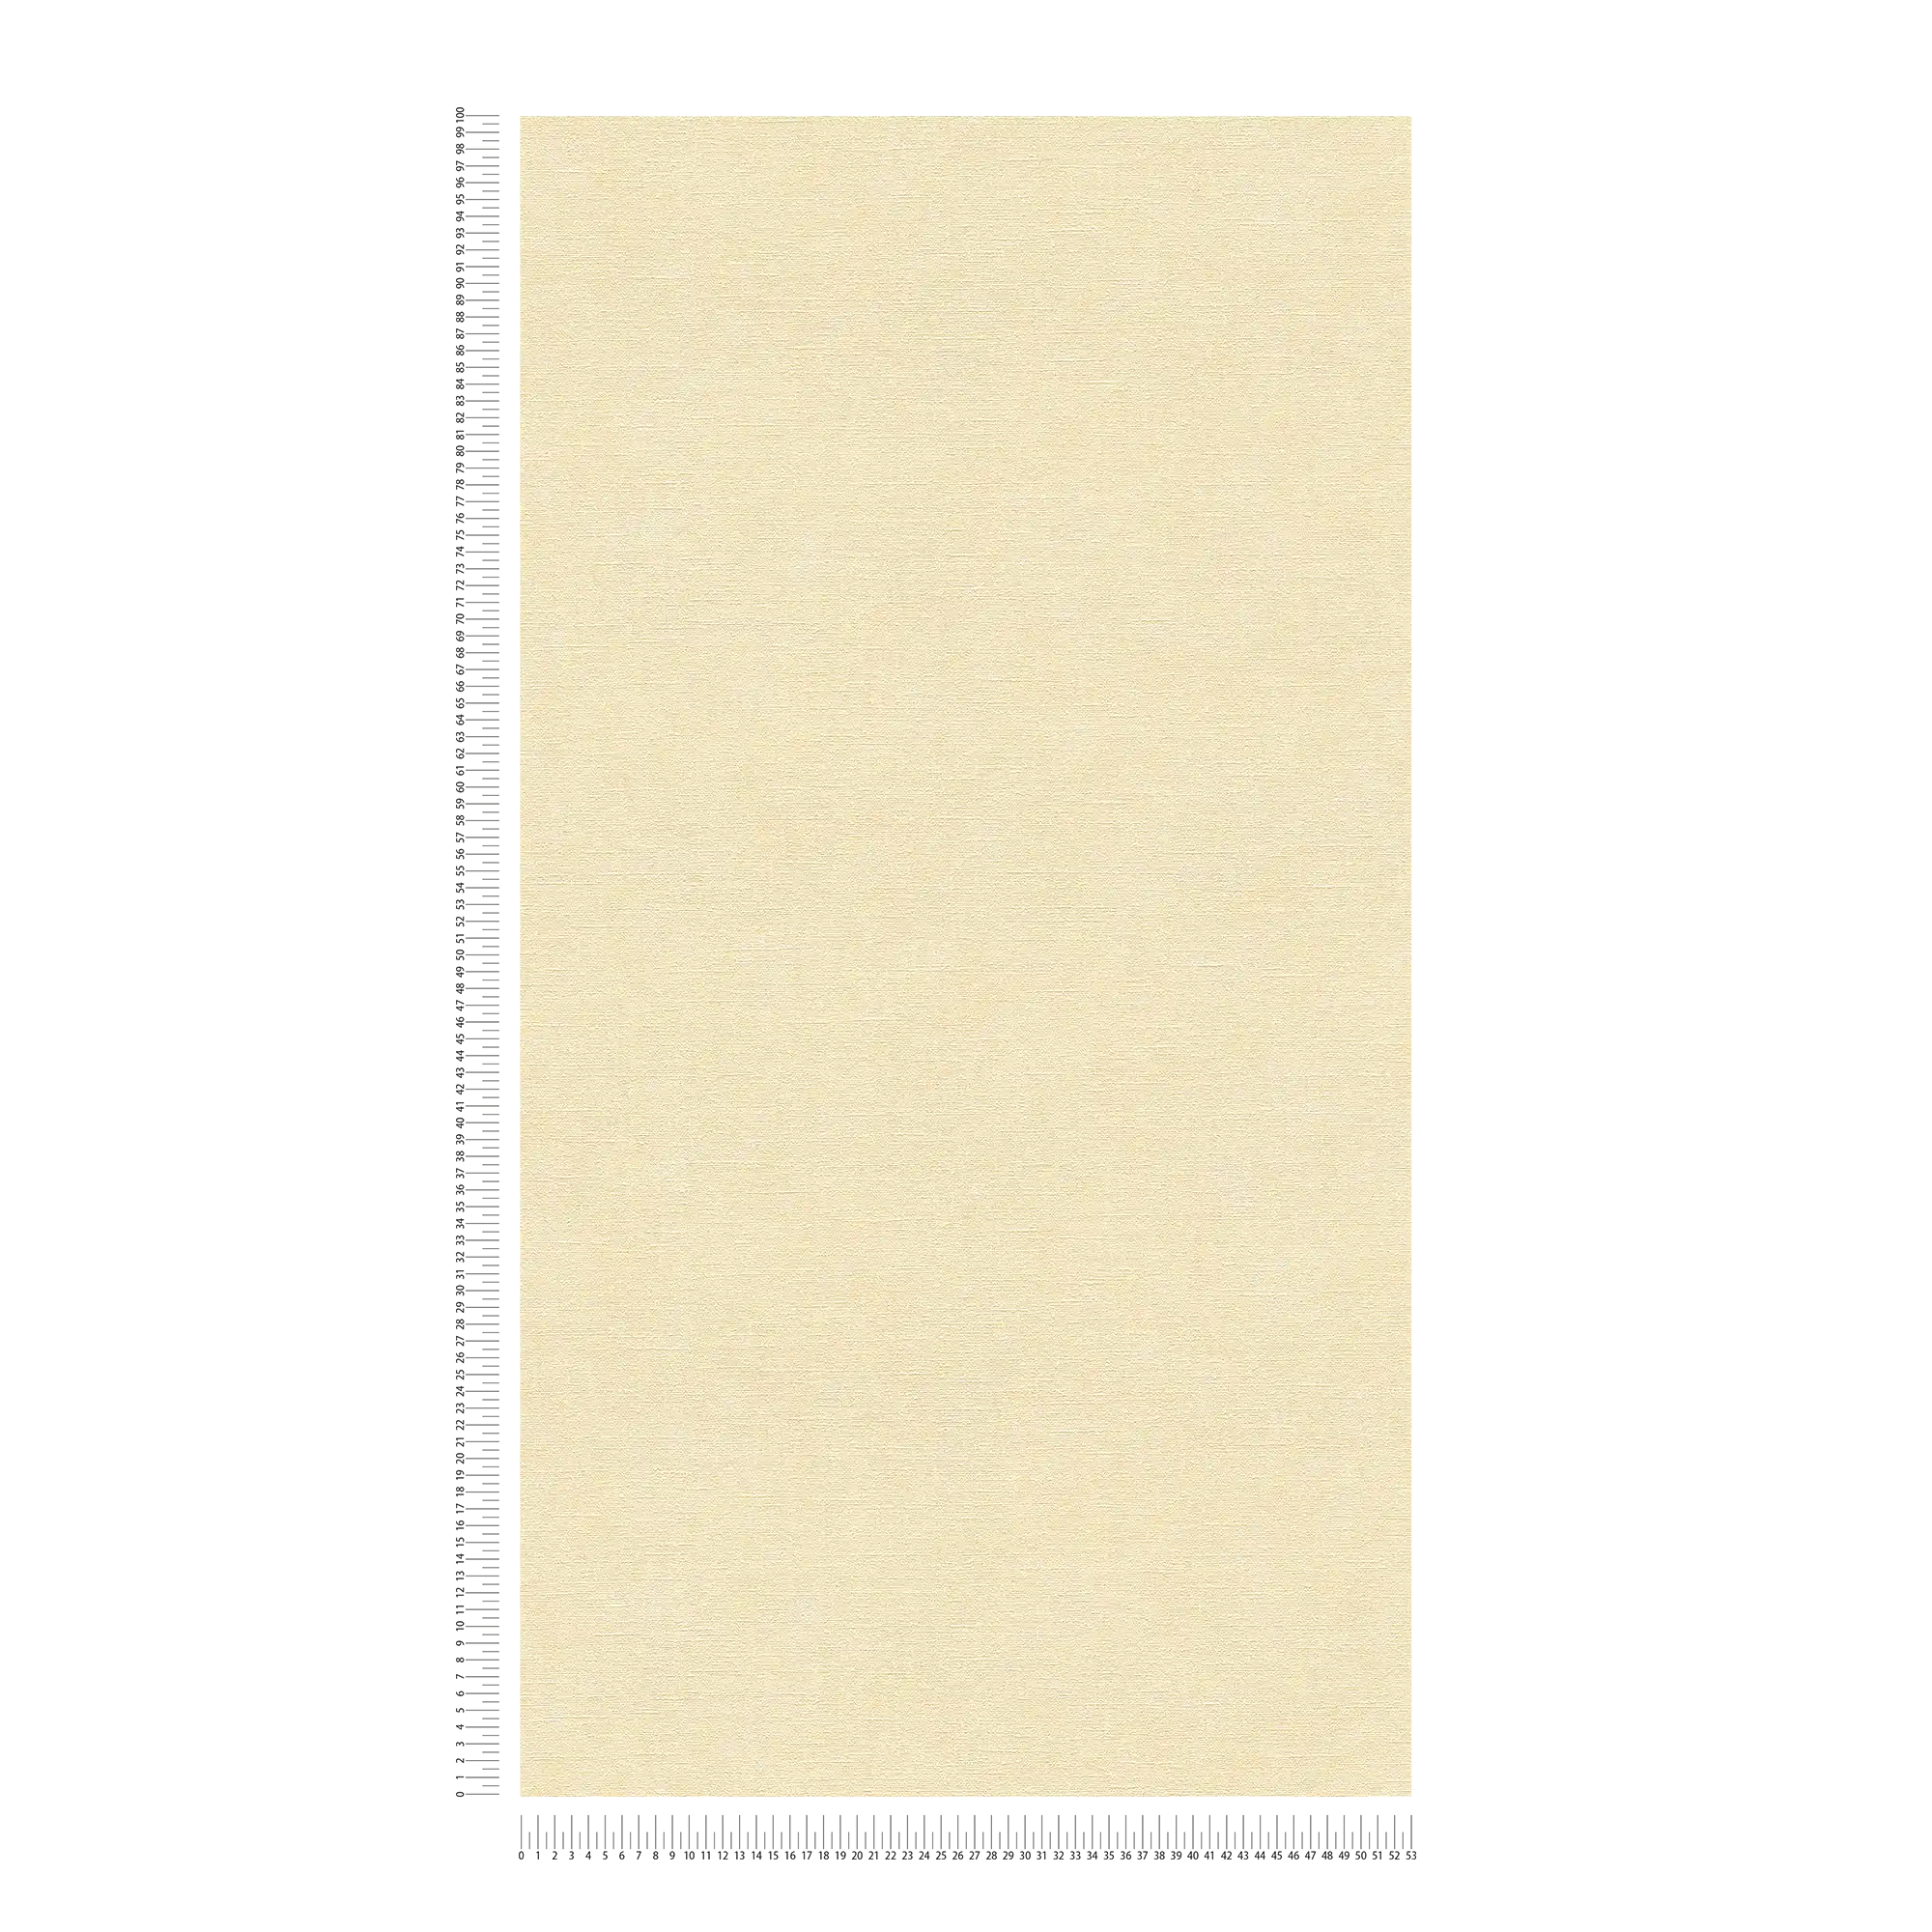             Carta da parati non tessuta, monocolore, aspetto tessile - beige
        